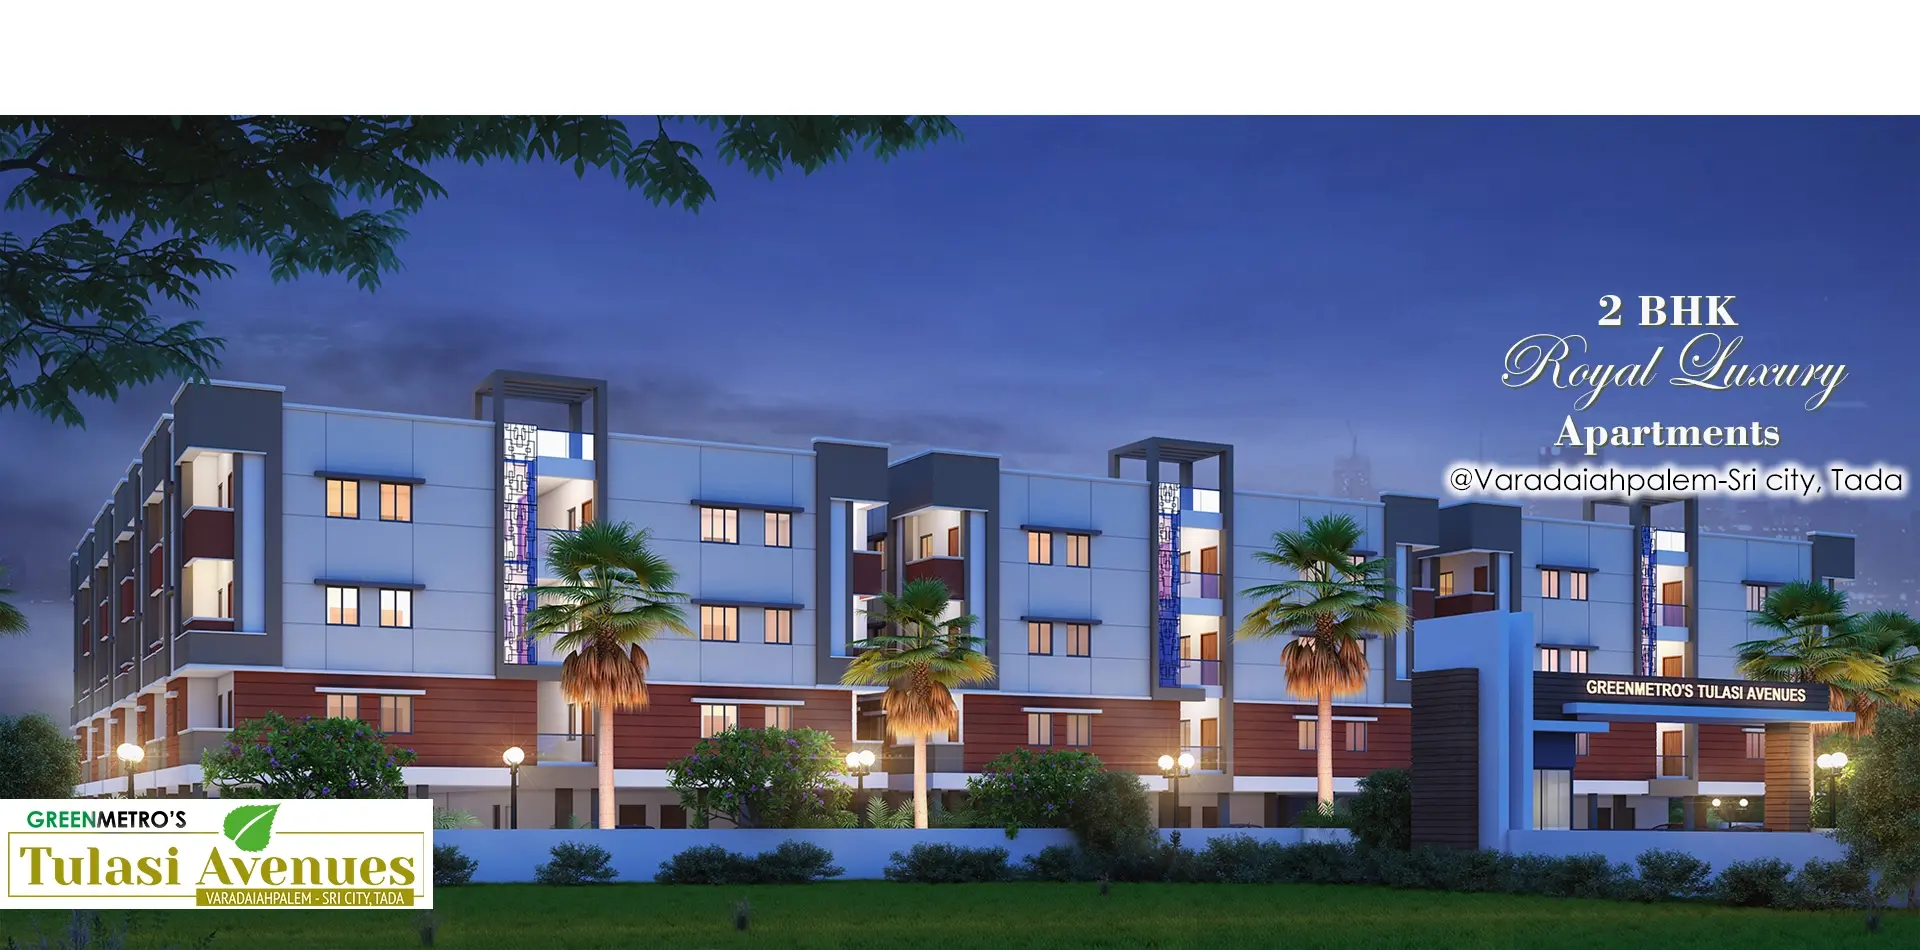 GreenMetro's Tulasi Avenues, Premium Apartments in TADA